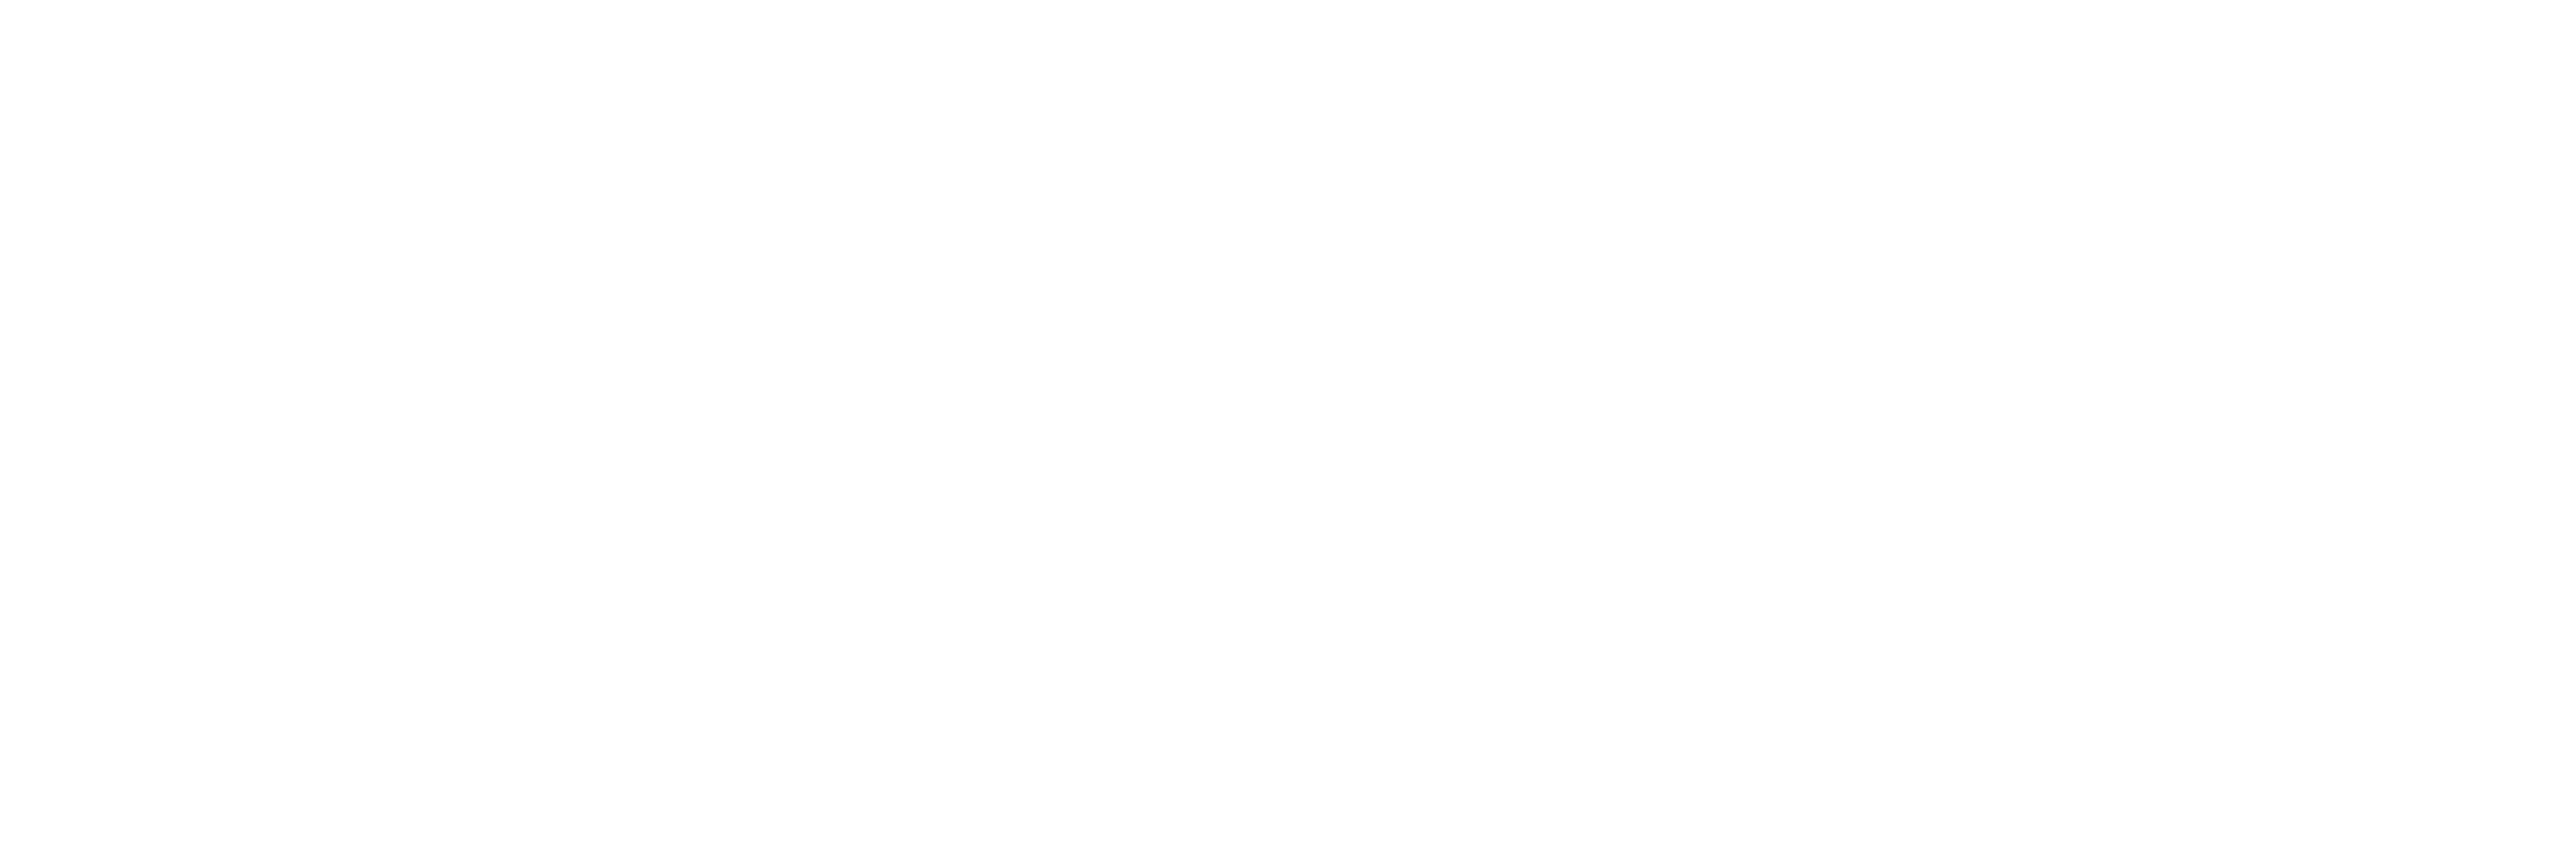 The Arthur W. Page Center 2023 Awards Logo